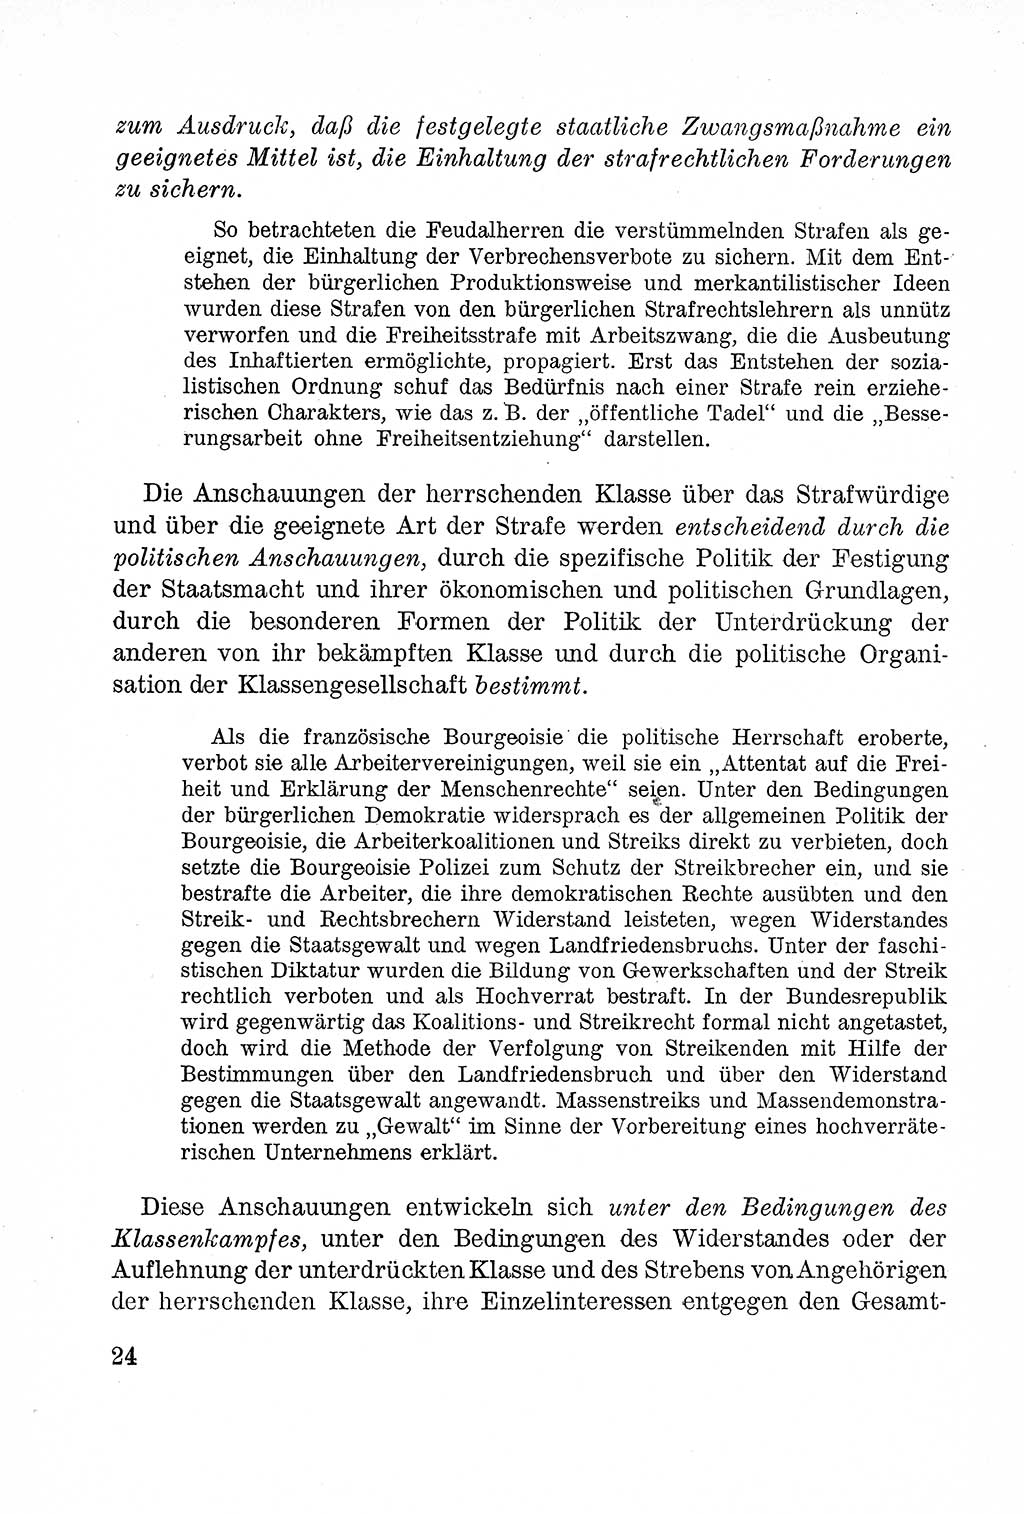 Lehrbuch des Strafrechts der Deutschen Demokratischen Republik (DDR), Allgemeiner Teil 1957, Seite 24 (Lb. Strafr. DDR AT 1957, S. 24)